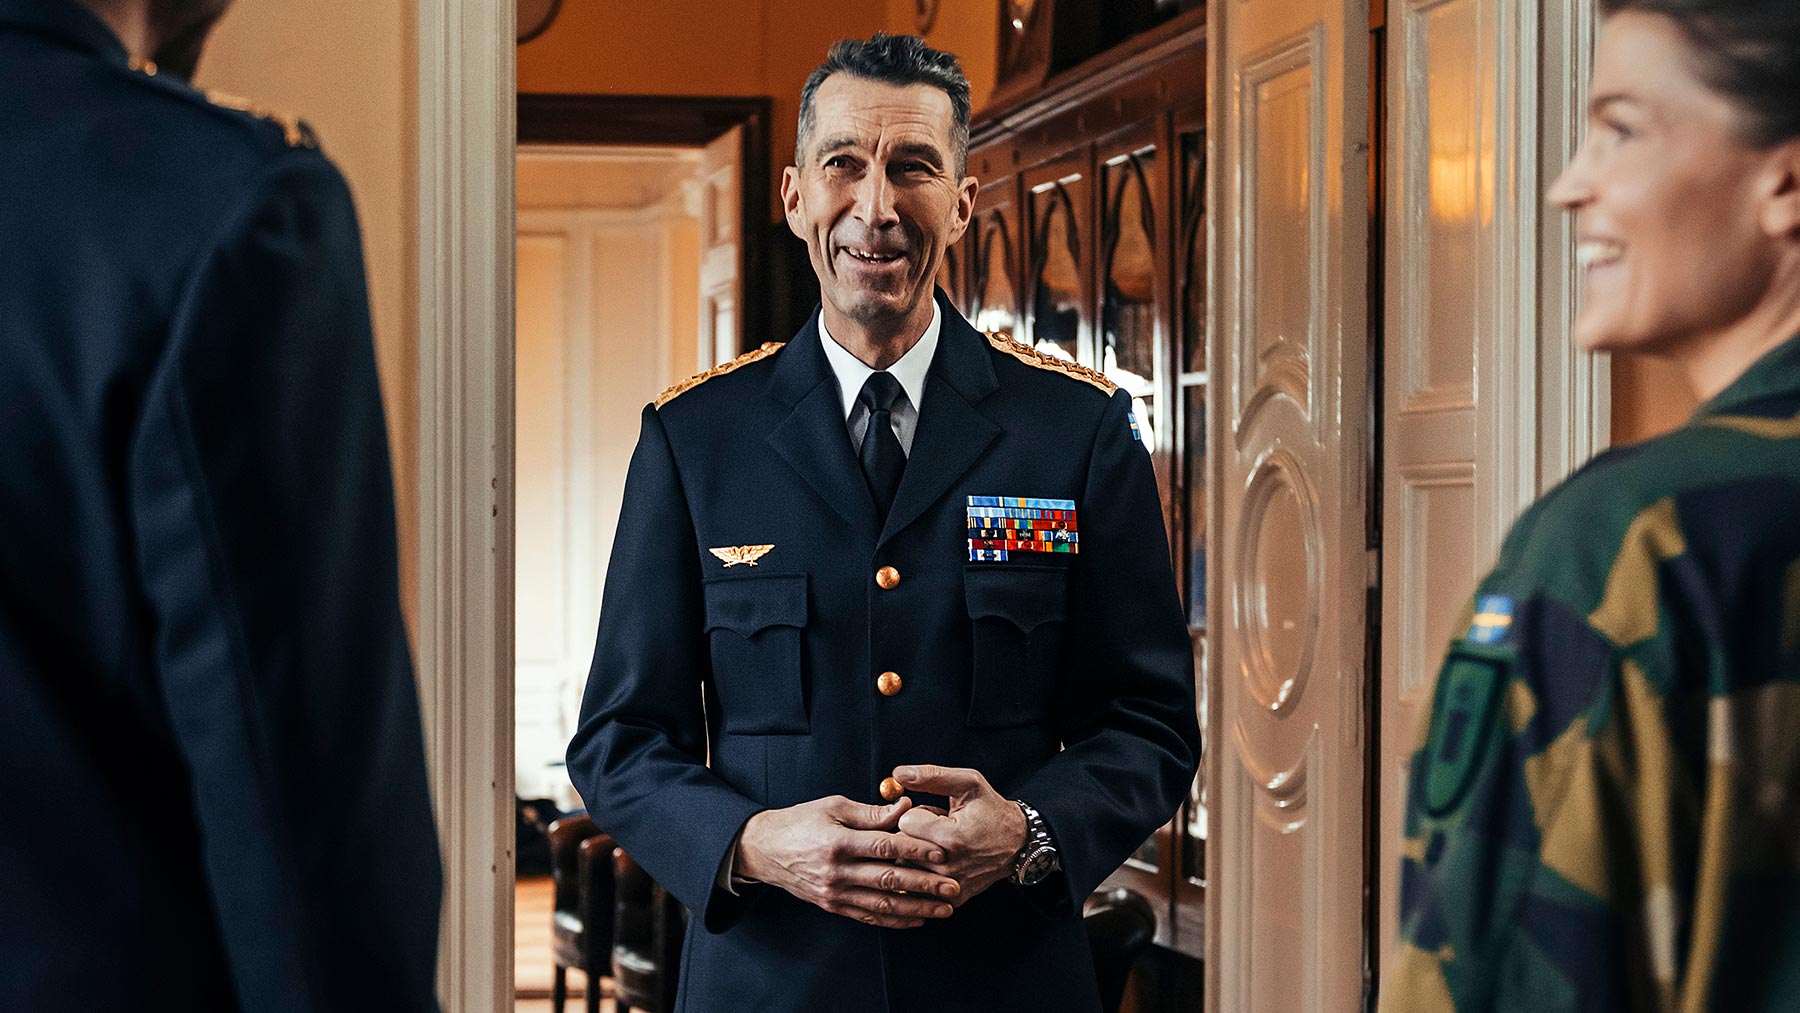 Micael Bydén, överbefälhavare på Försvarsmakten, utses till Årets Chef 2021 av tidningen Chef.